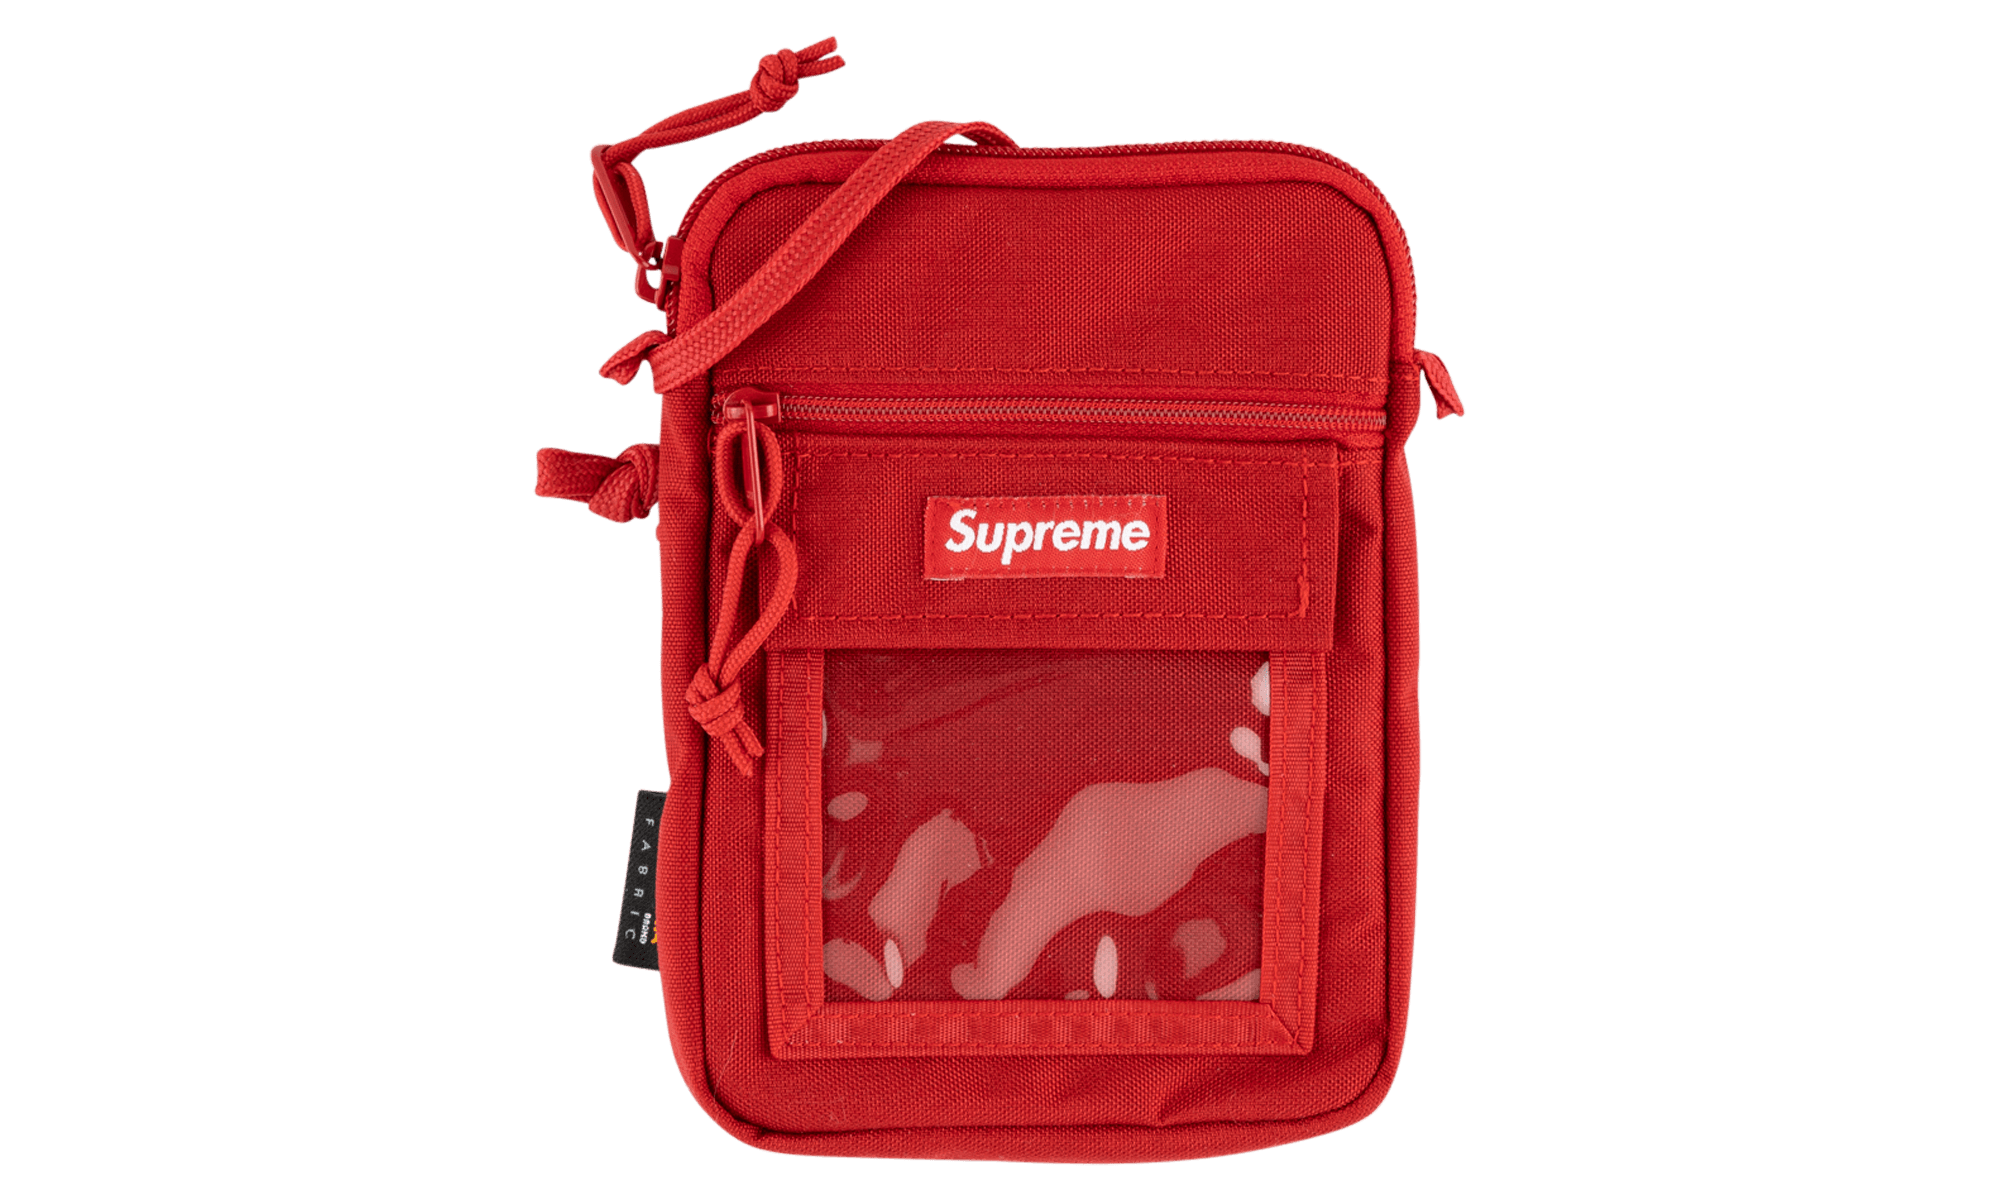 Supreme Shoulder Bag SS19 Red One Size